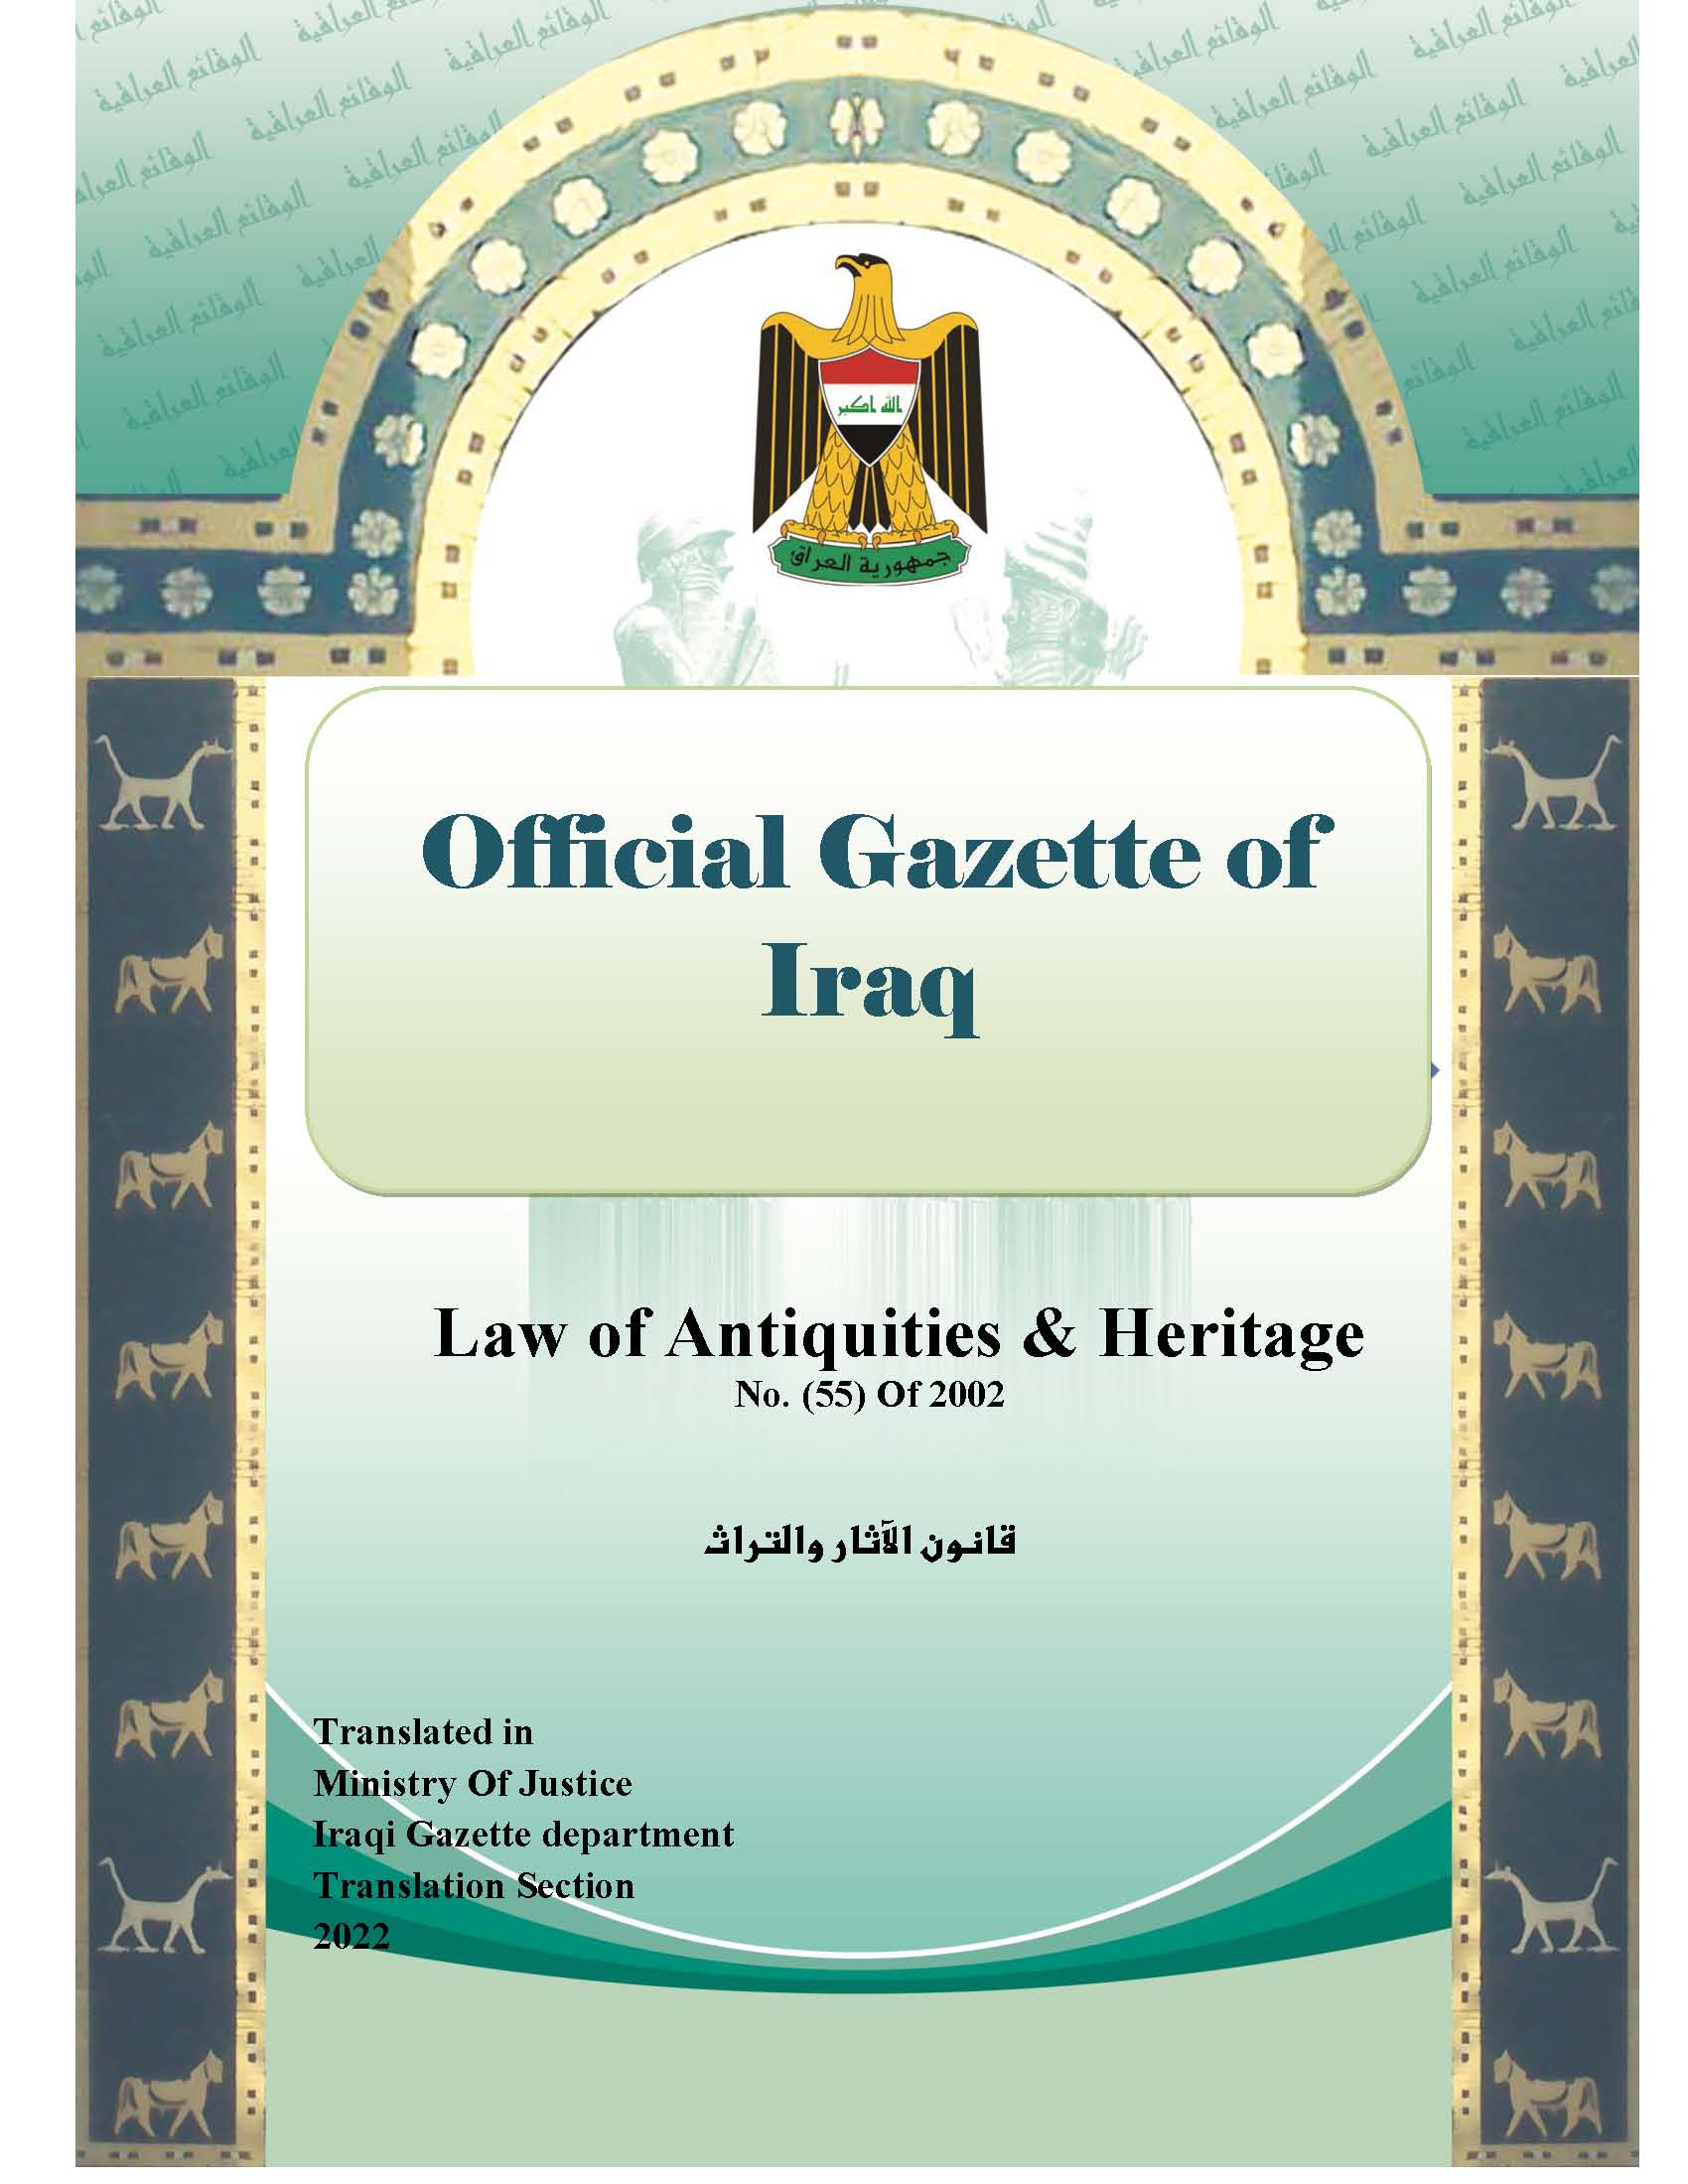       Law of Antiquities & Heritage N0(55) of 2002 